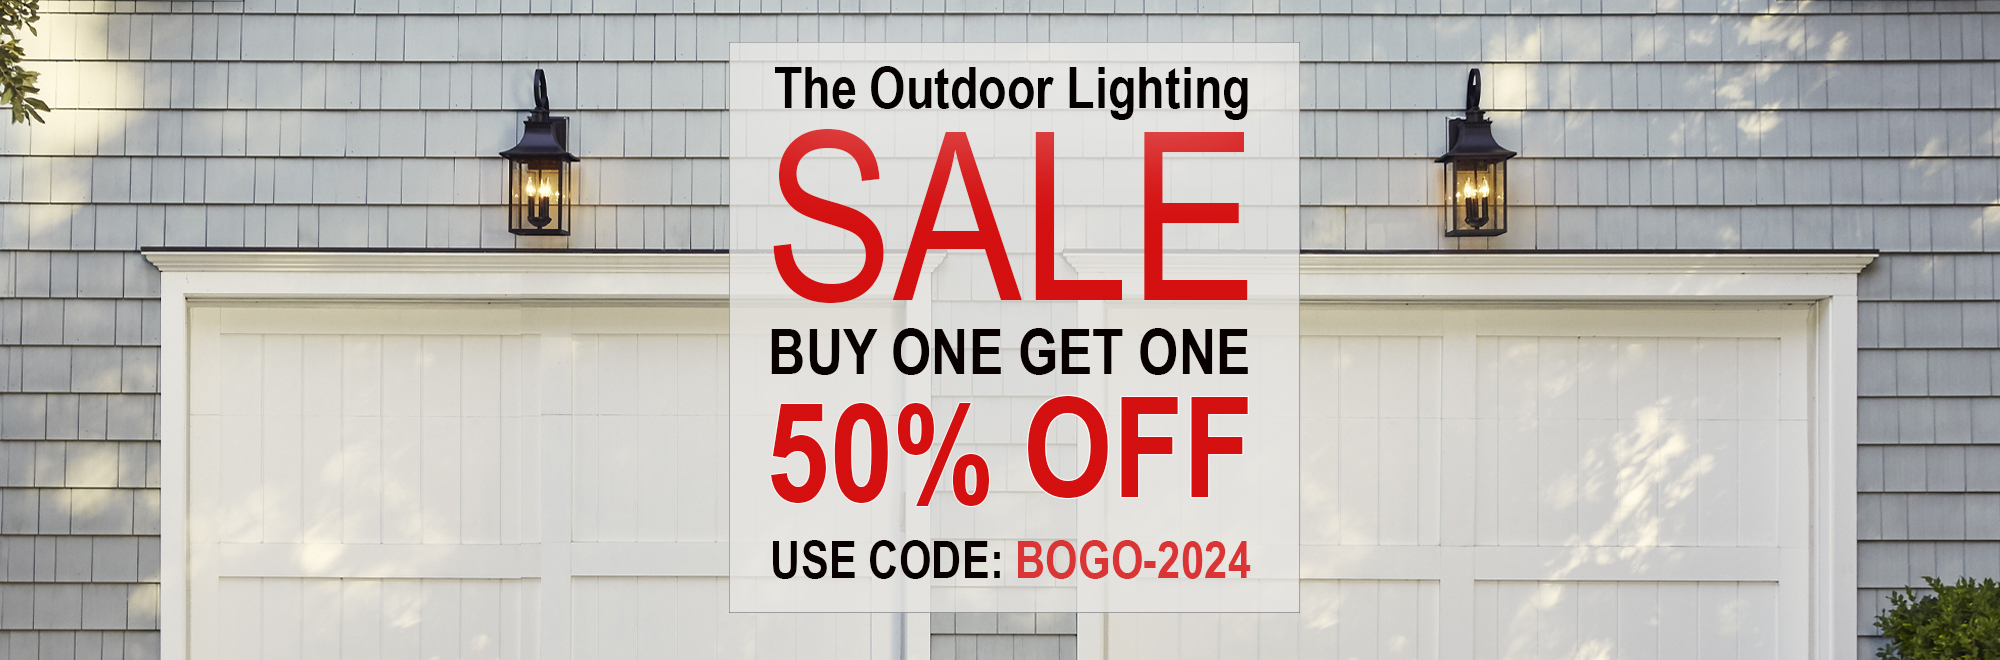 Outdoor Lighting Buy One Get One 50% Off Sale